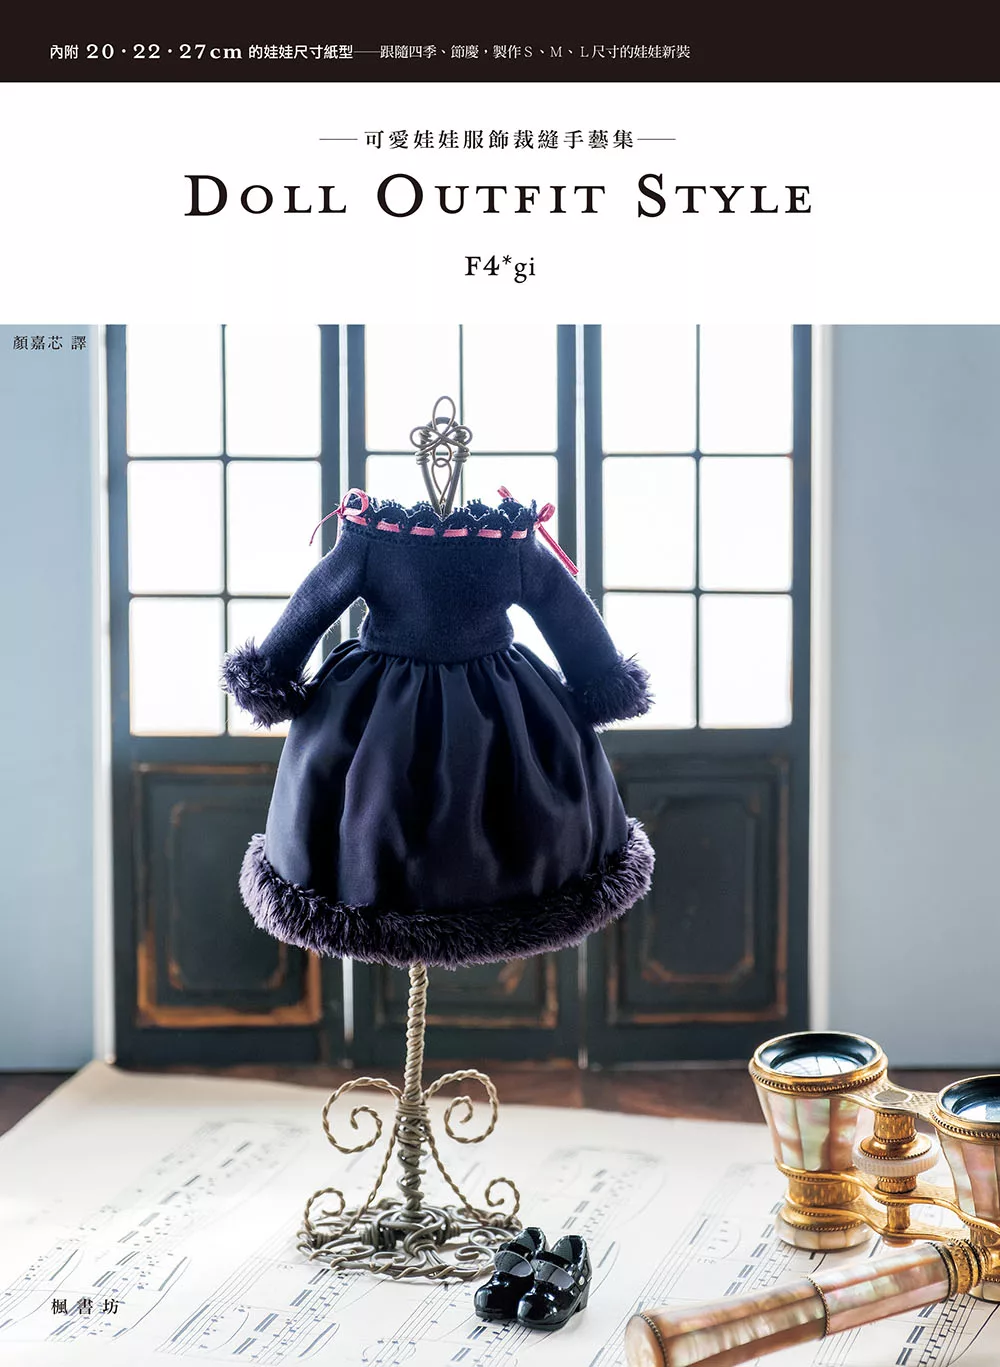 DOLL OUTFIT STYLE可愛娃娃服飾裁縫手藝集 (電子書)